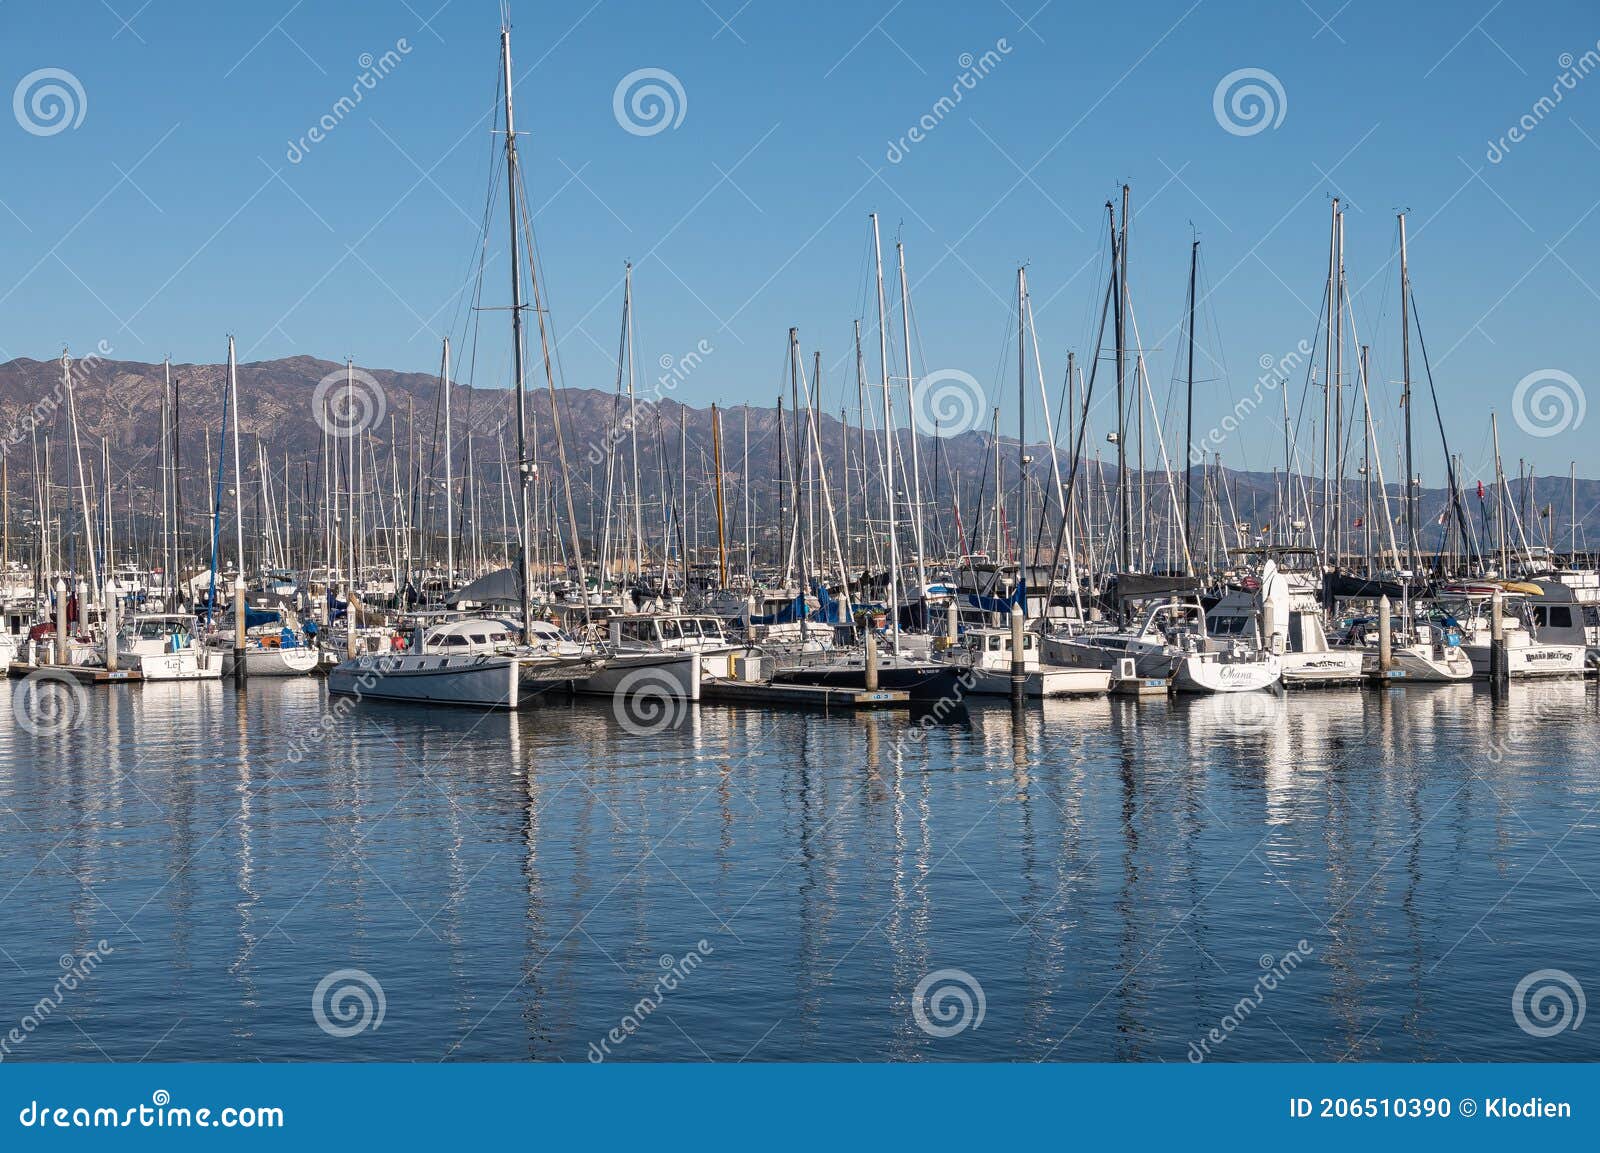 Many Yachts at Harbor of Santa Barbara, California, USA Editorial Image ...